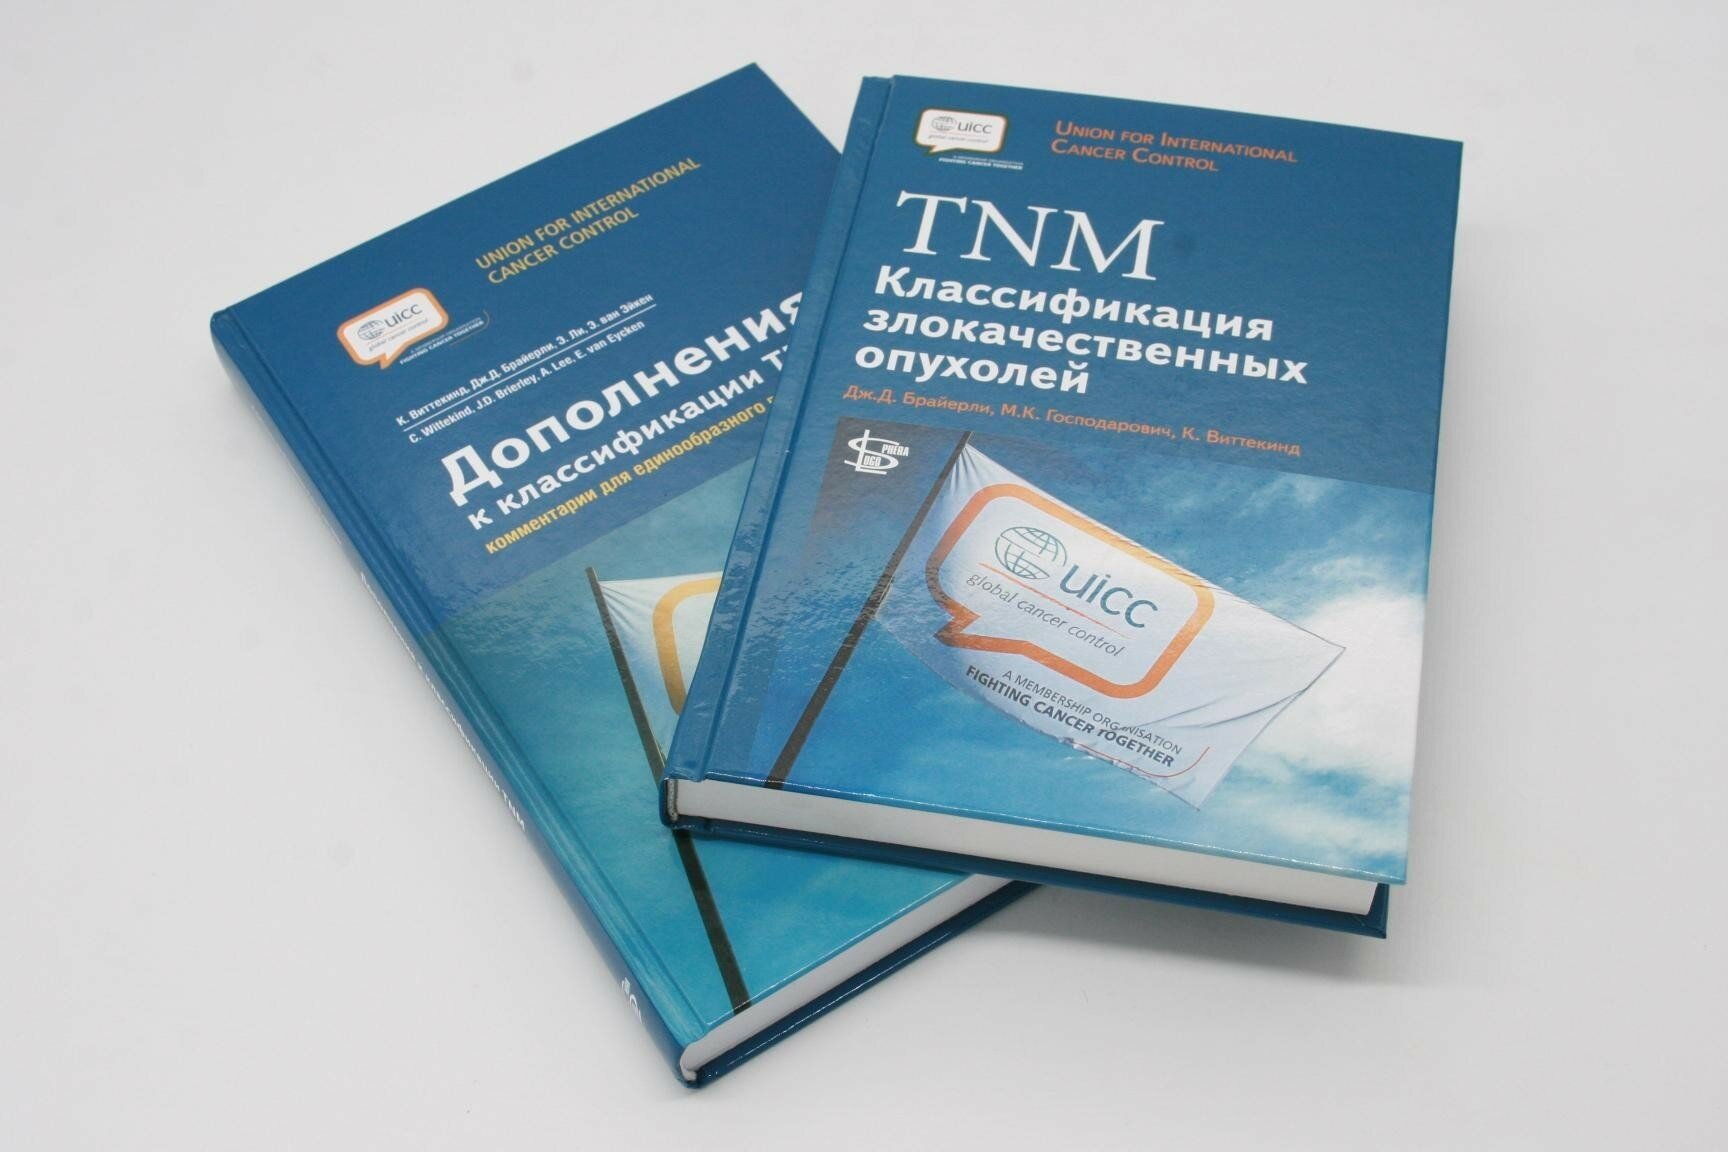 Комплект TNM Классификация злокачественных опухолей+Дополнения к классификации TNM